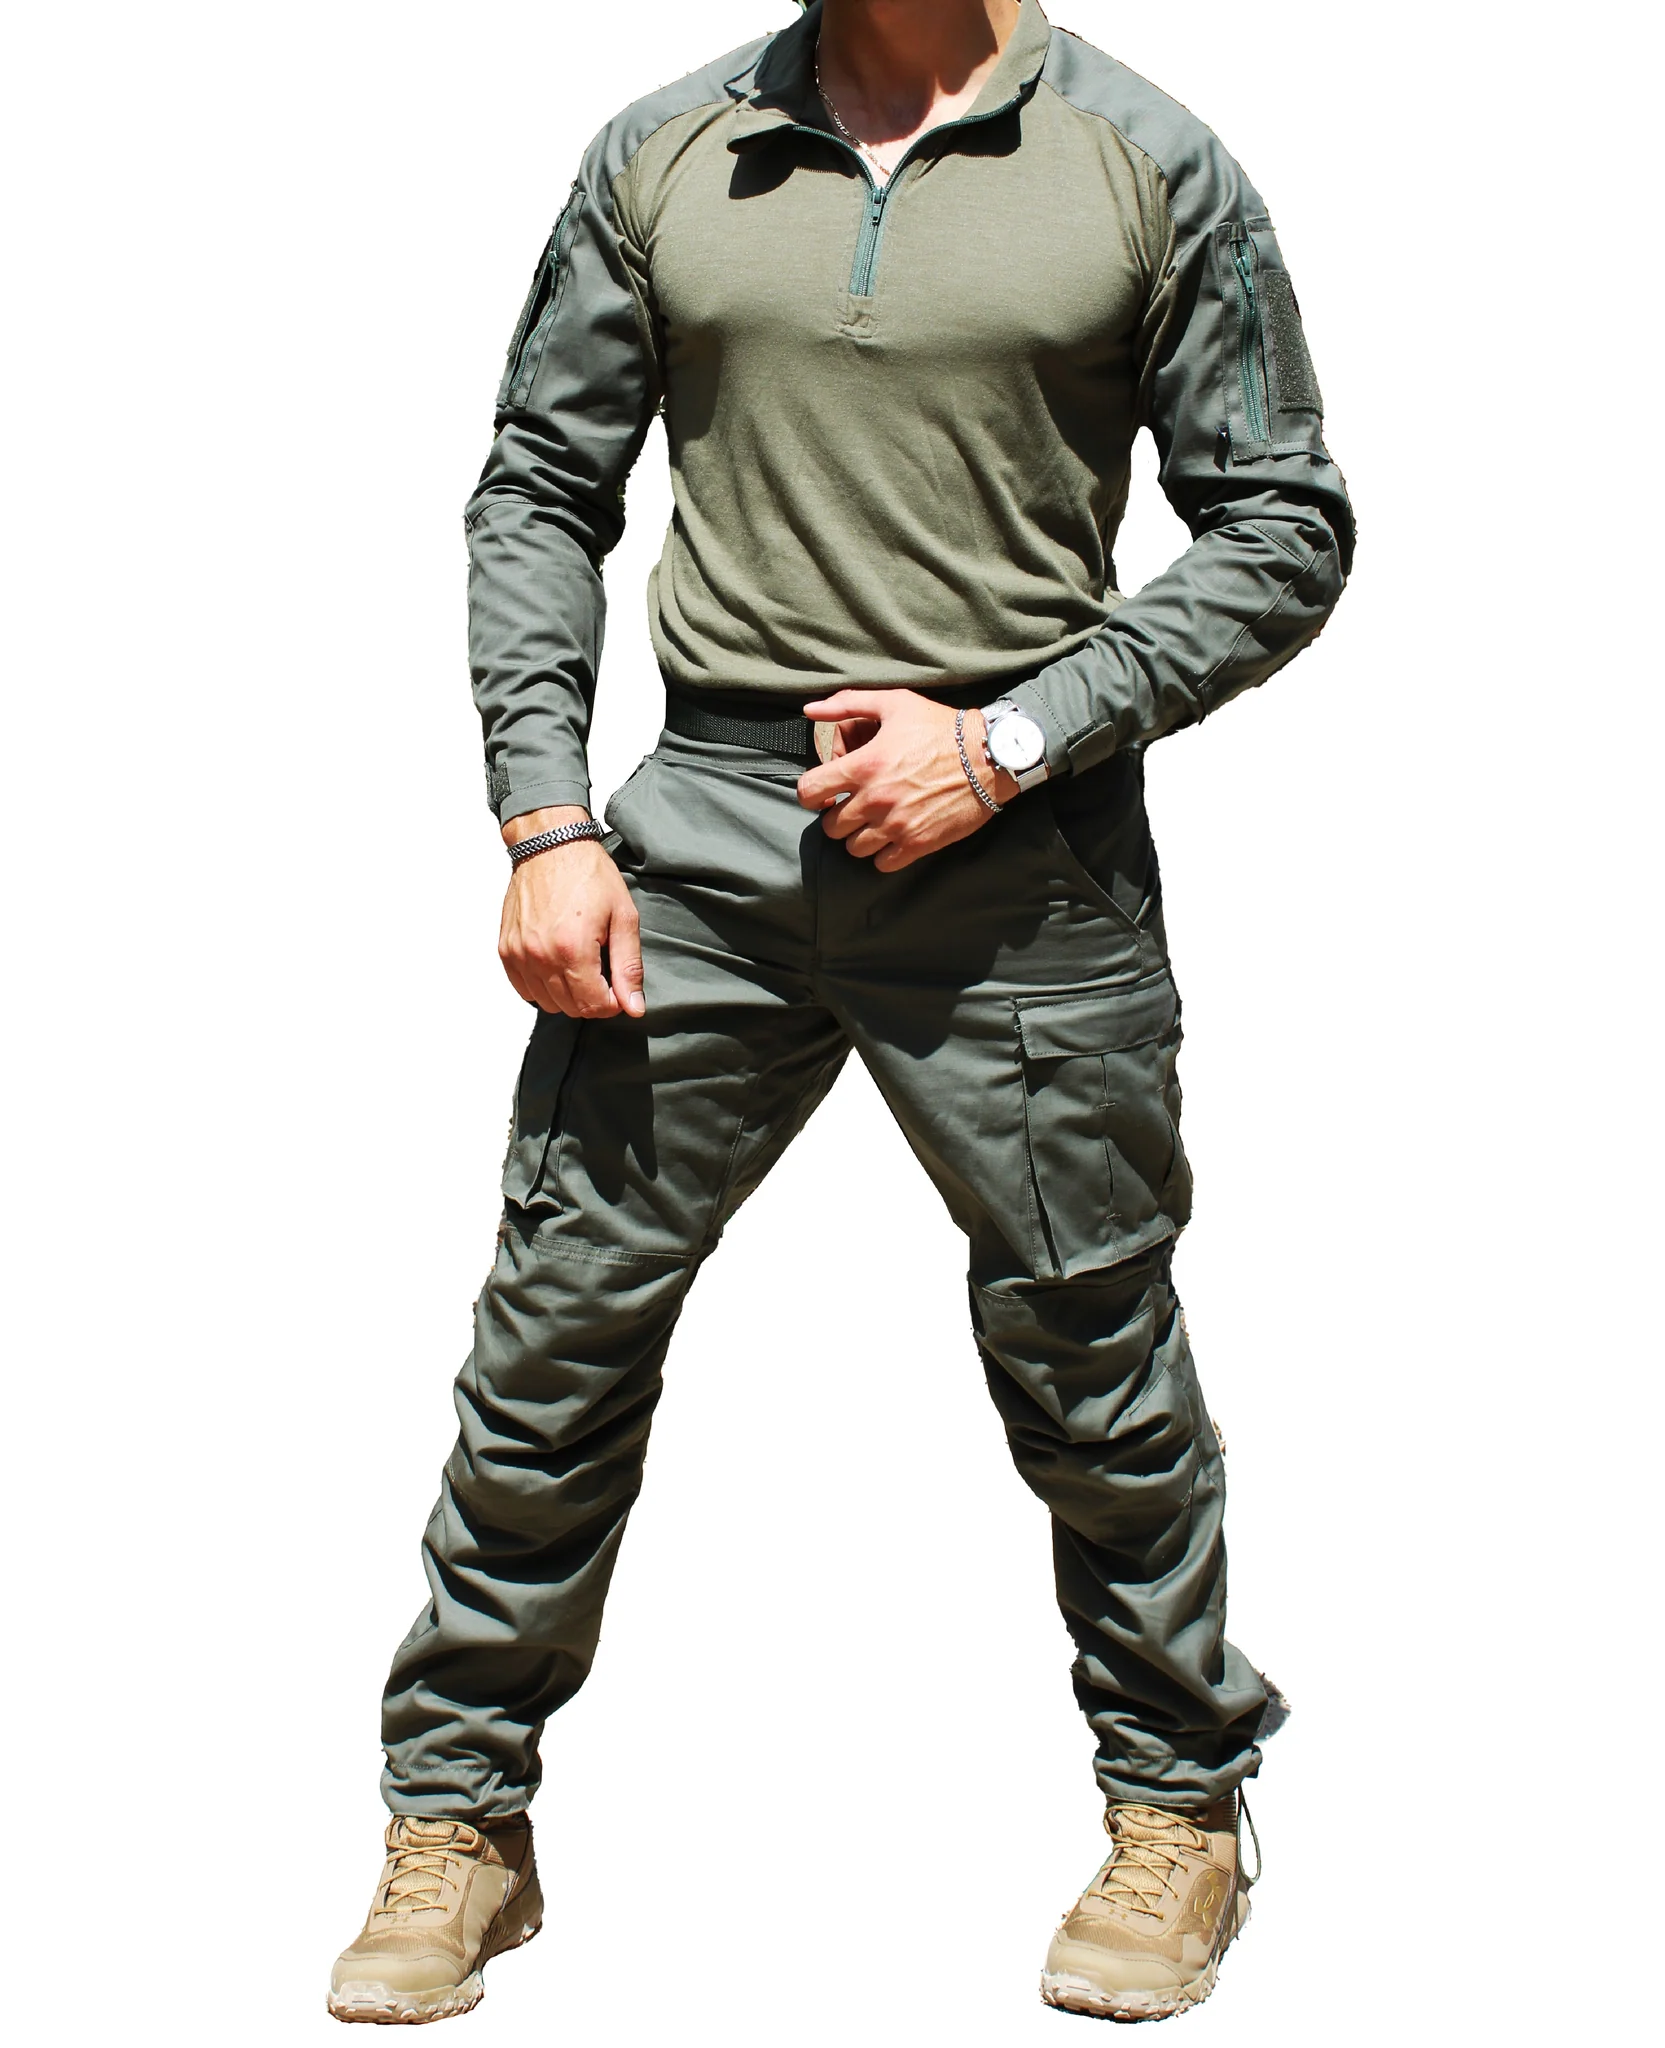 IDF Tactical Uniform Shirt